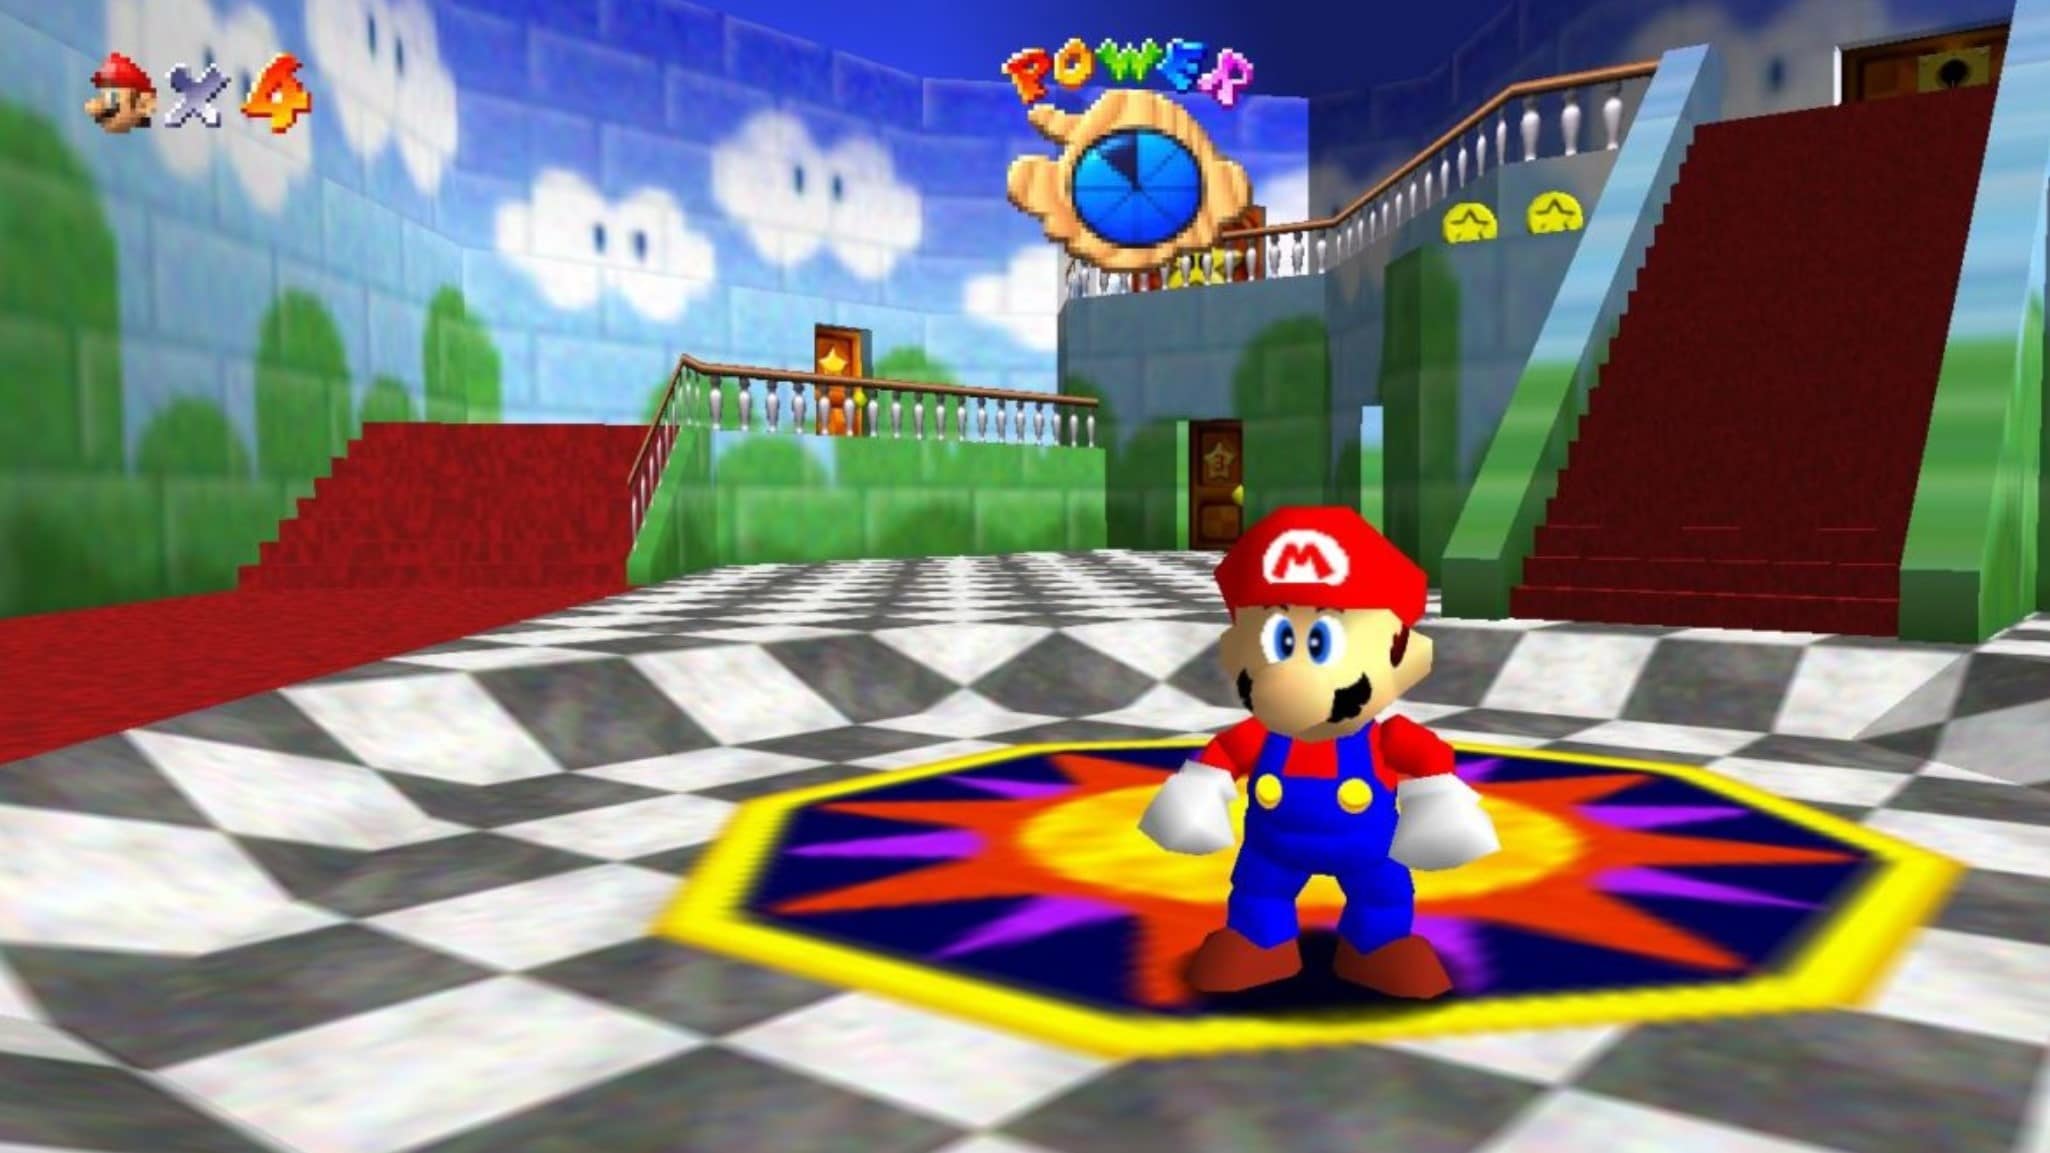 Игры super mario 64. Super Mario 64 Nintendo 64. Super Mario 64 Port PC (jose8820). Super Mario 64 PC Port. Mario 64 1996.